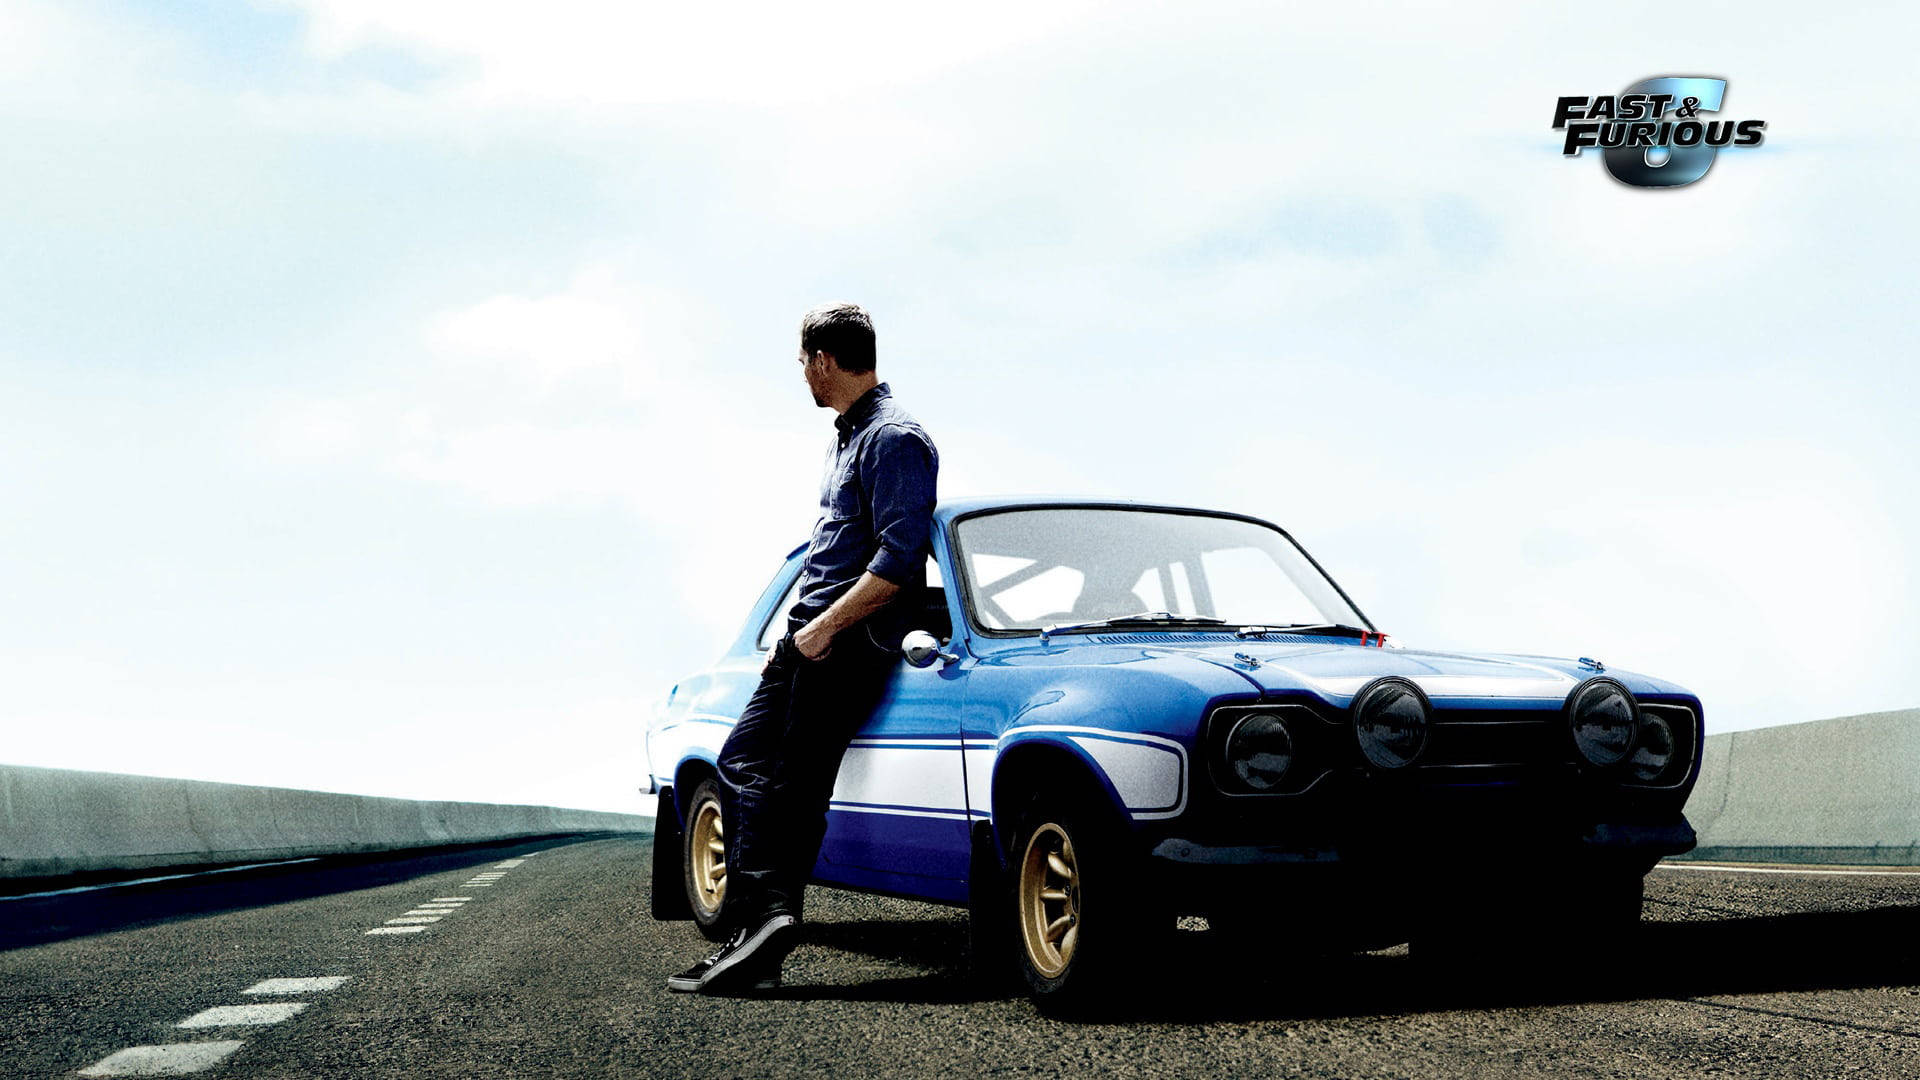 Paul Walker Leaning On A Blue Car